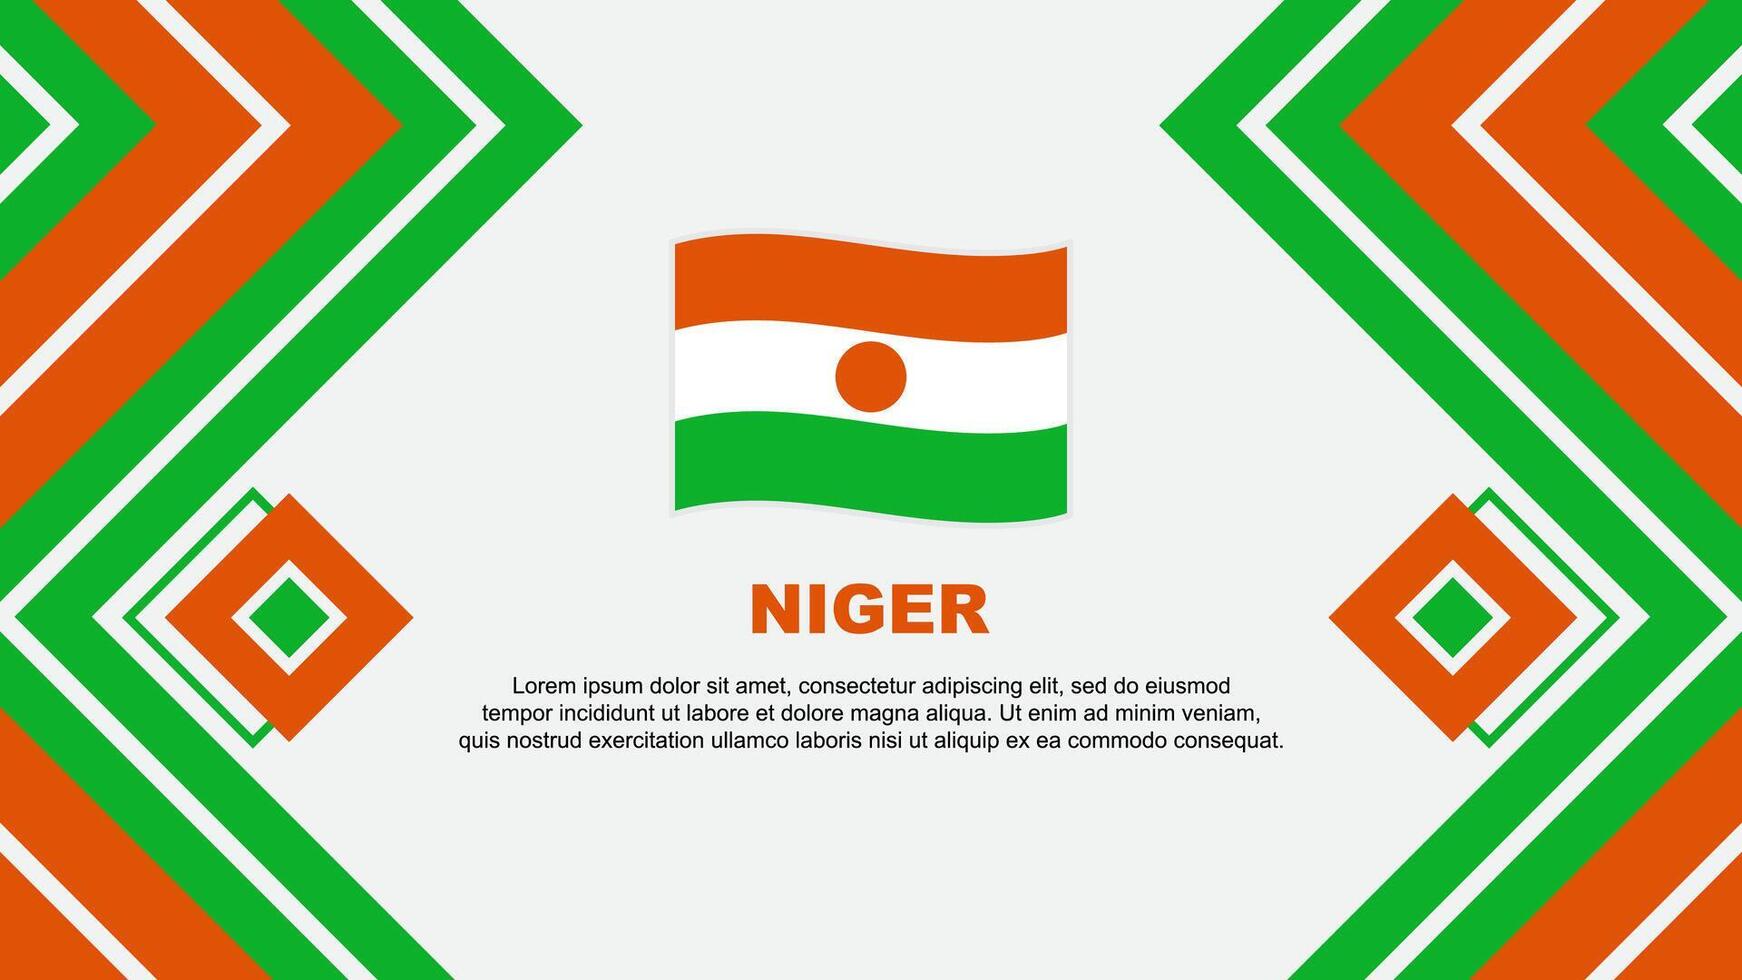 Niger Flag Abstract Background Design Template. Niger Independence Day Banner Wallpaper Vector Illustration. Niger Design